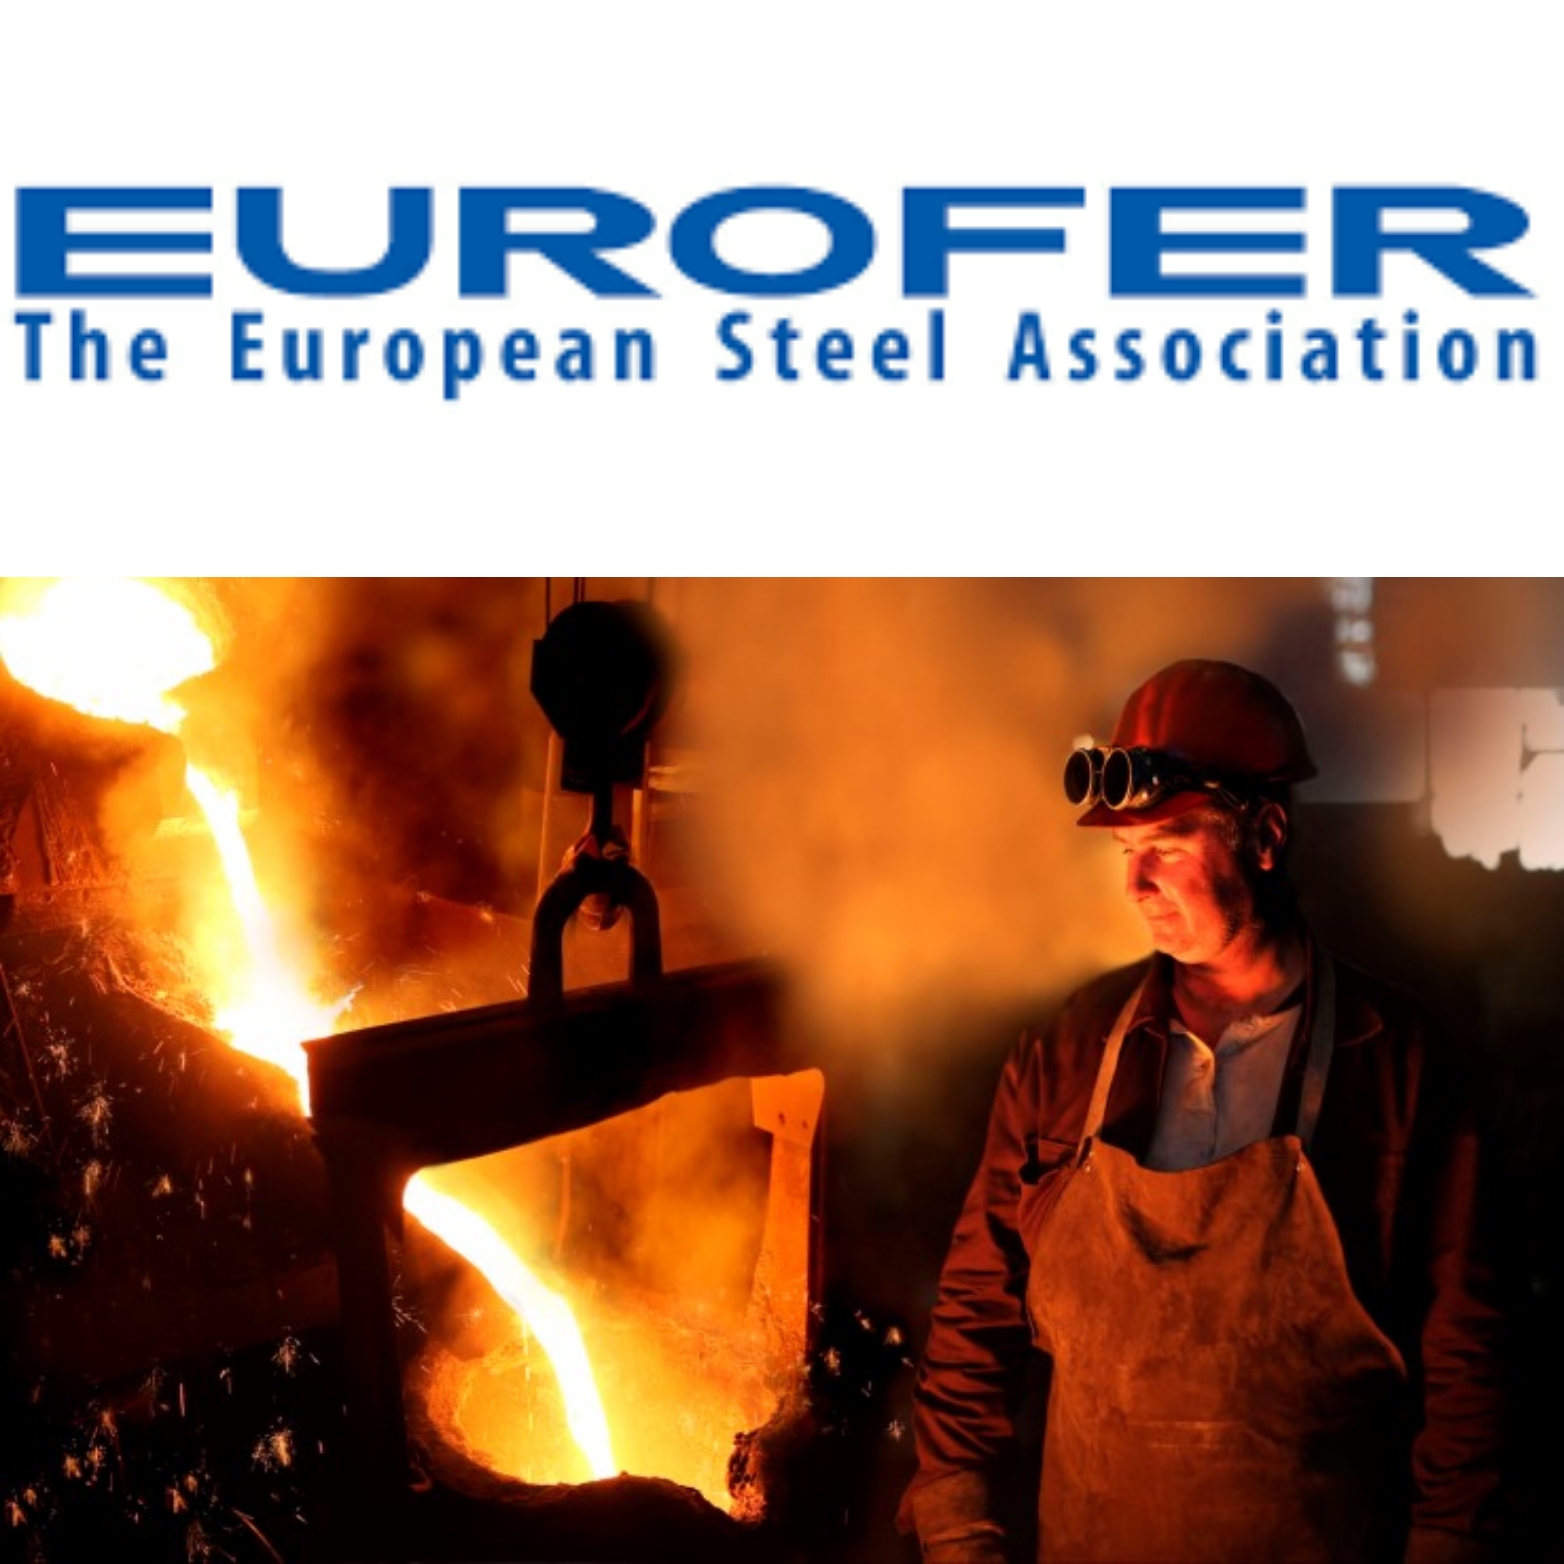 پیش بینی افت ۵۰ درصدی صادرات فولاد اروپا به آمریکا به اعمال تعرفه های جدید